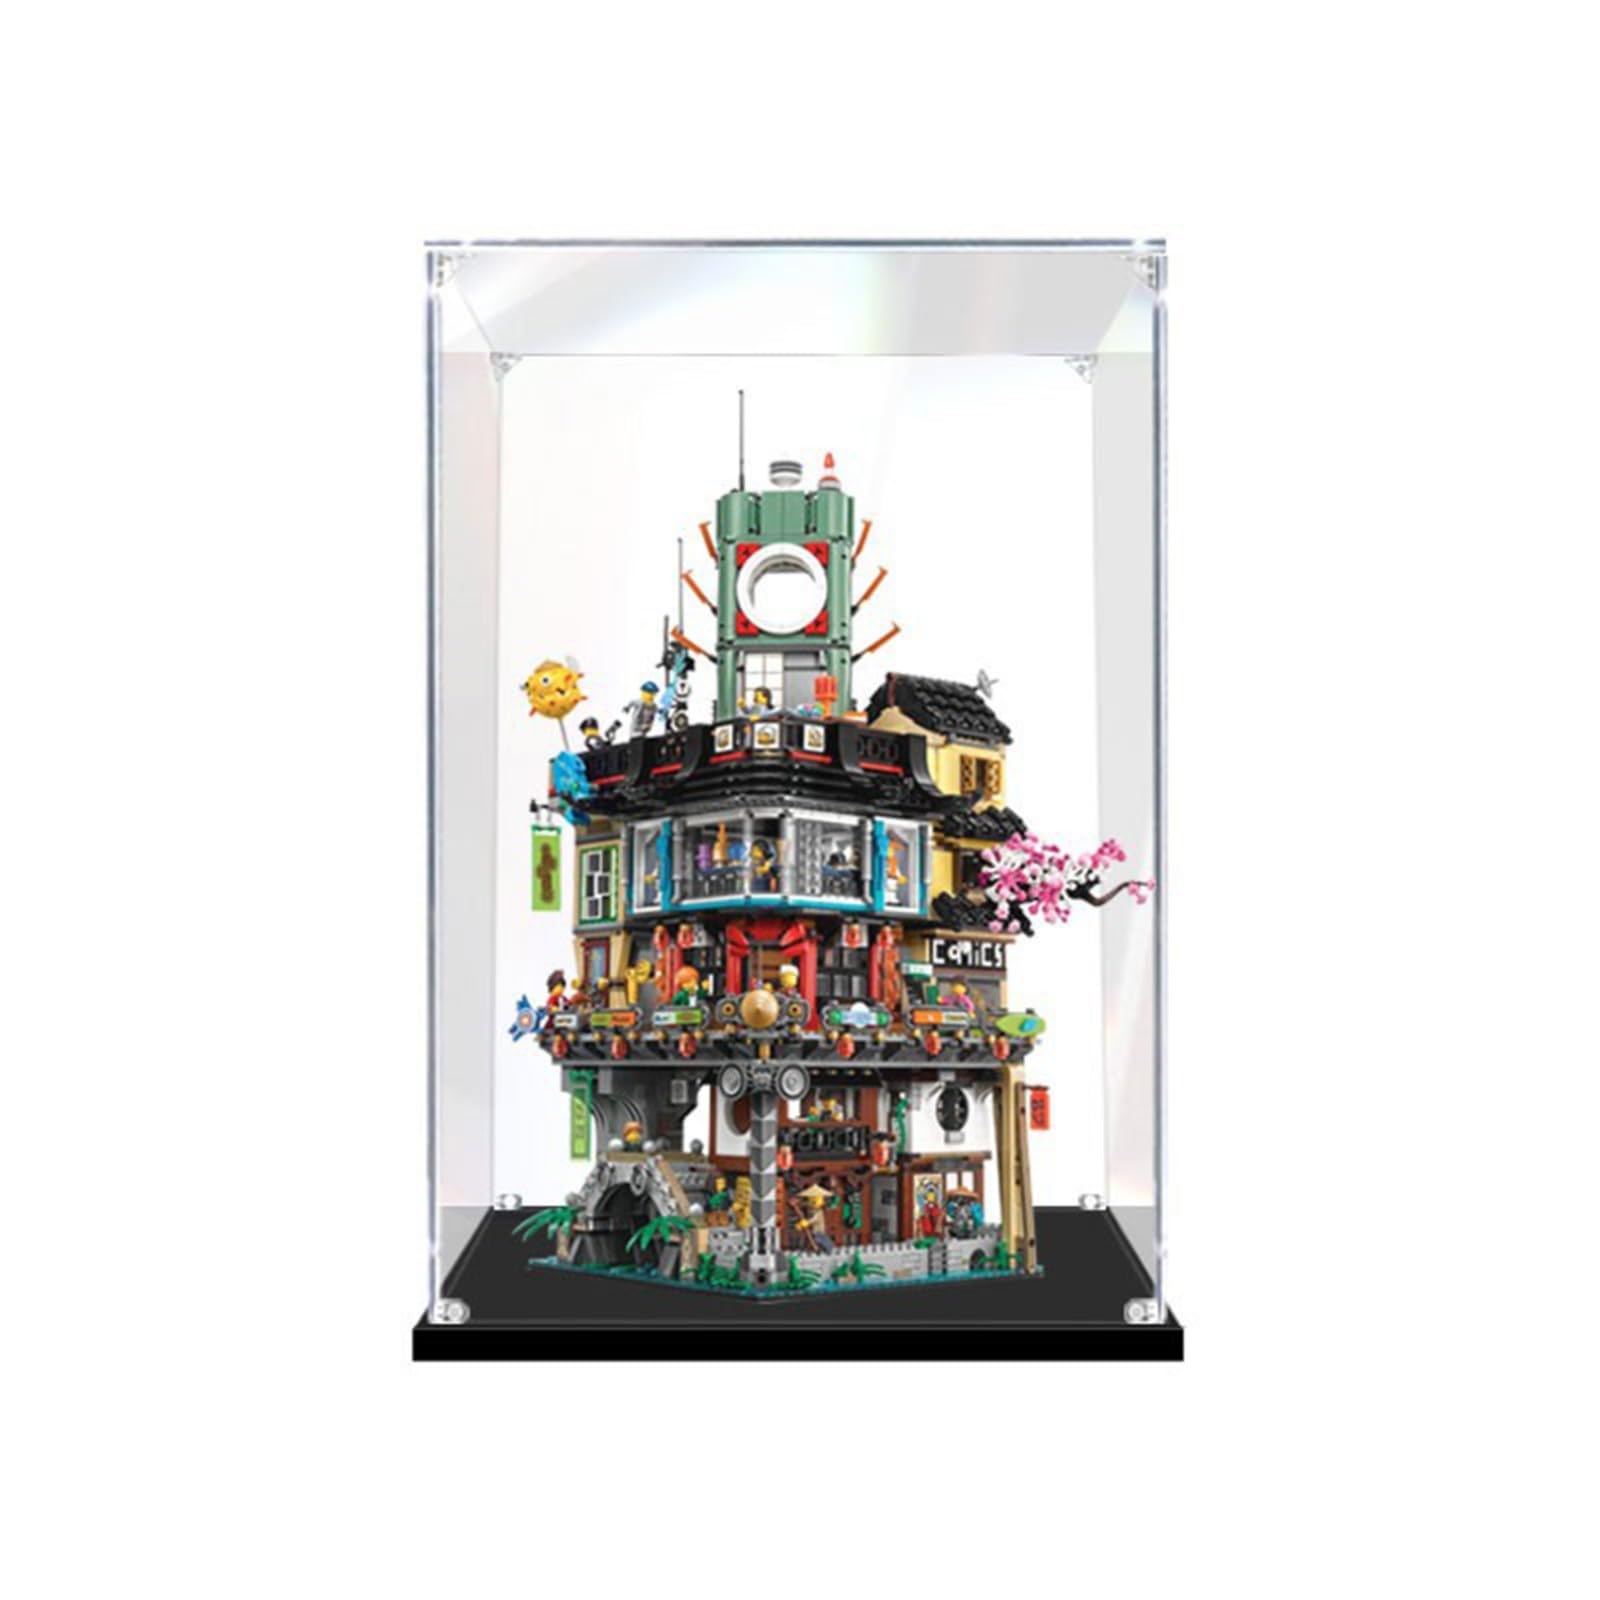 Acryl Vitrine Box Für Lego 70620 Ninja City, Acryl Vitrine, staubdichte Aufbewahrungsbox Präsentationsbox für Minifiguren Spielzeug Sammlung (45 * 40 * 65cm) 3mm